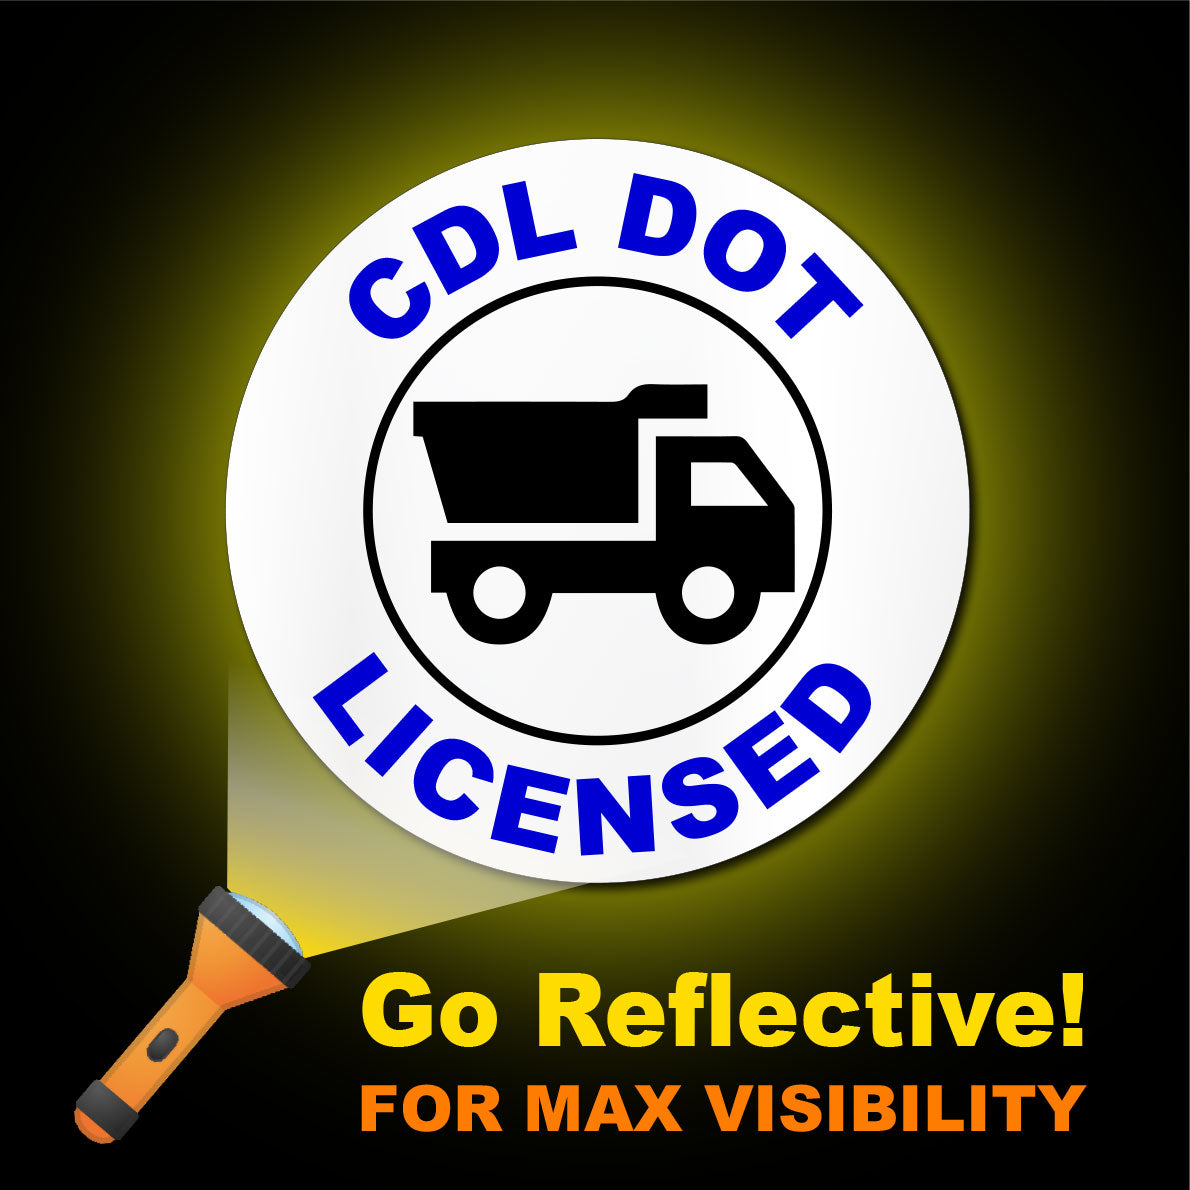 Construction Hard Hat Sticker | CDL DOT Licensed Driver